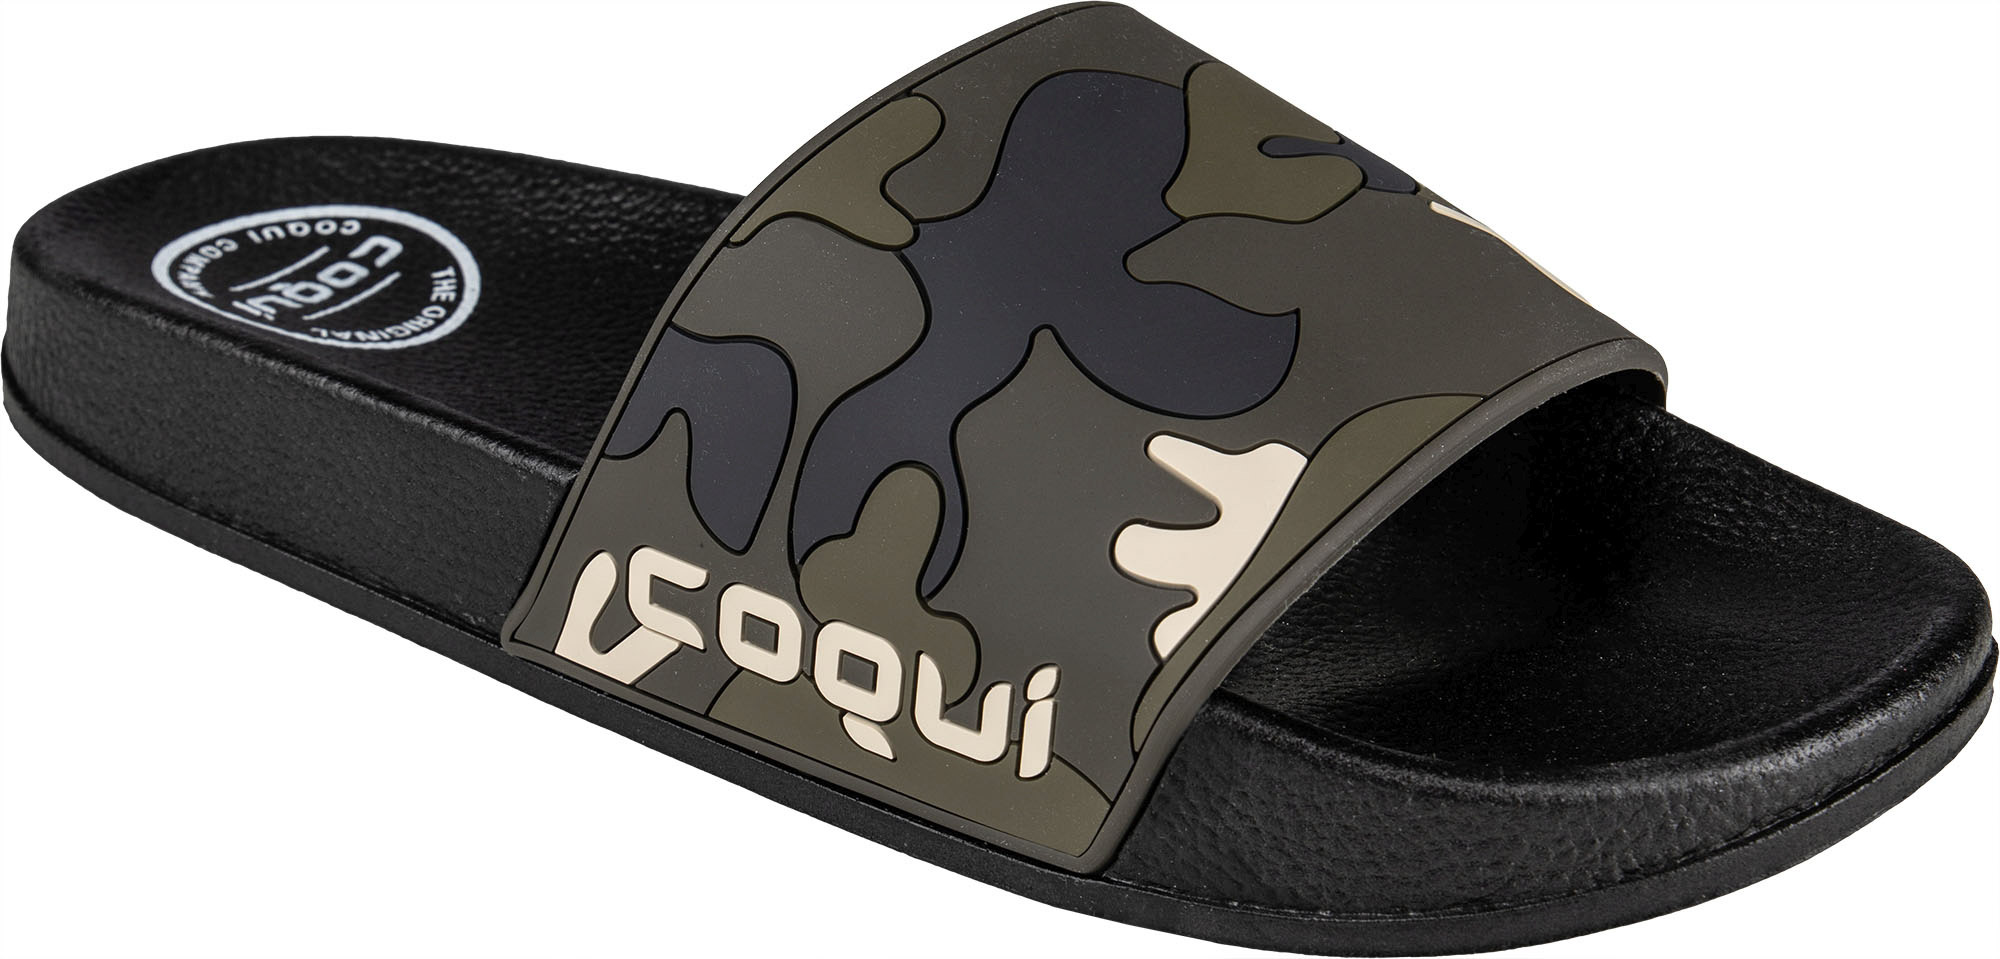 Pánské pantofle Coqui Flexi 6261 Black-Army green camo|46